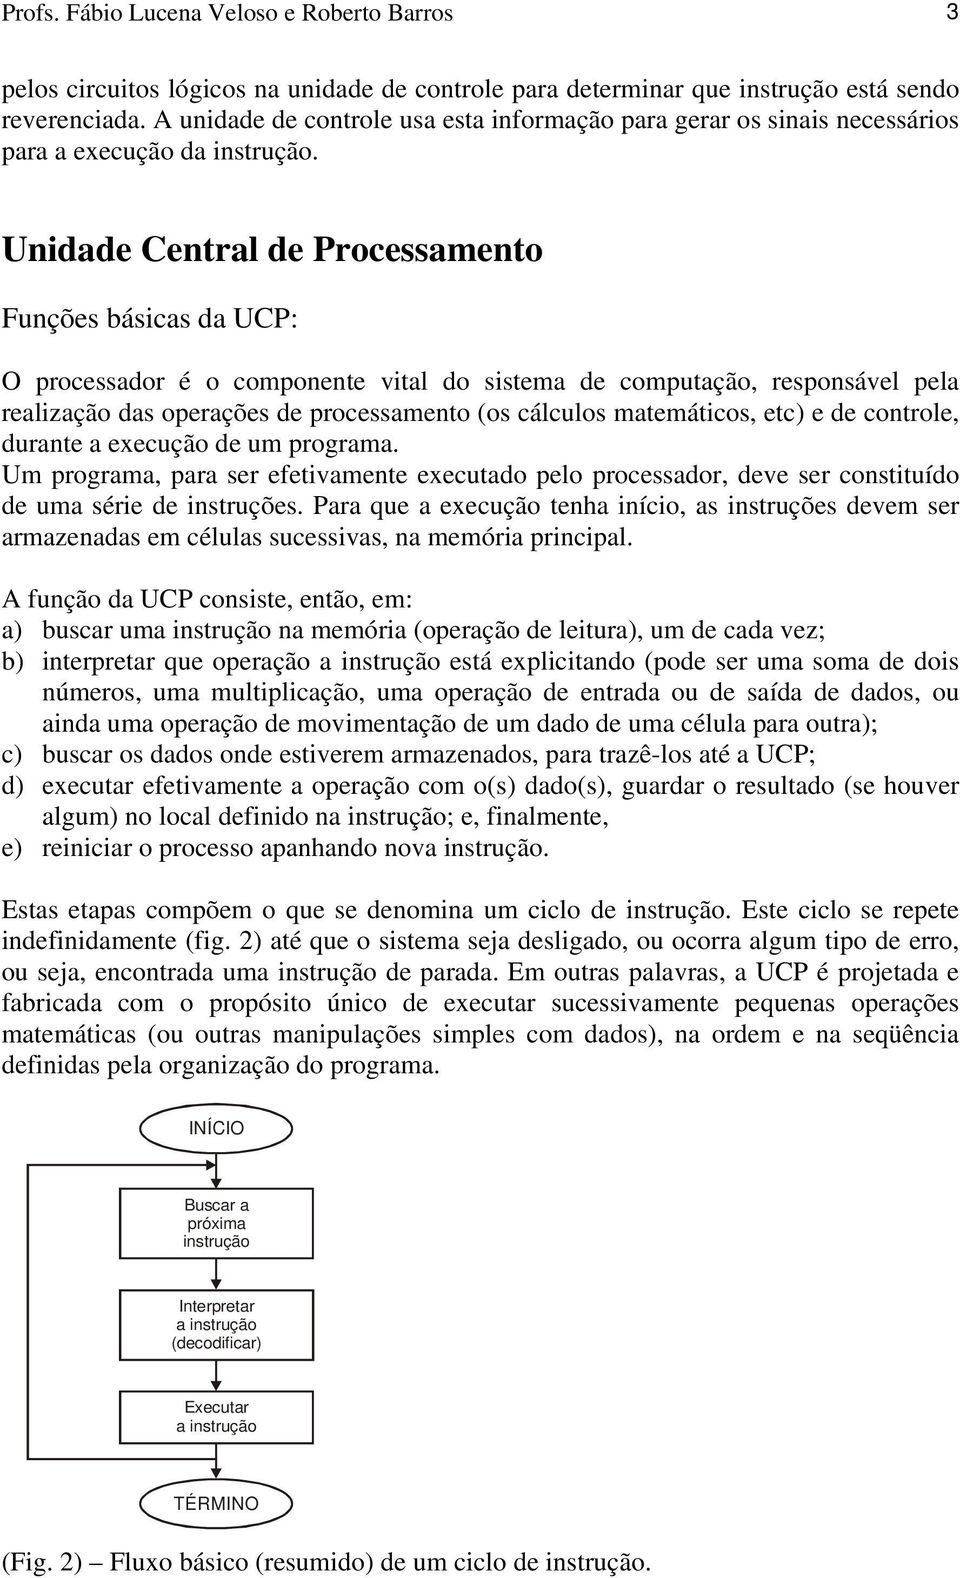 Unidade Central de Processamento Funções básicas da UCP: O processador é o componente vital do sistema de computação, responsável pela realização das operações de processamento (os cálculos